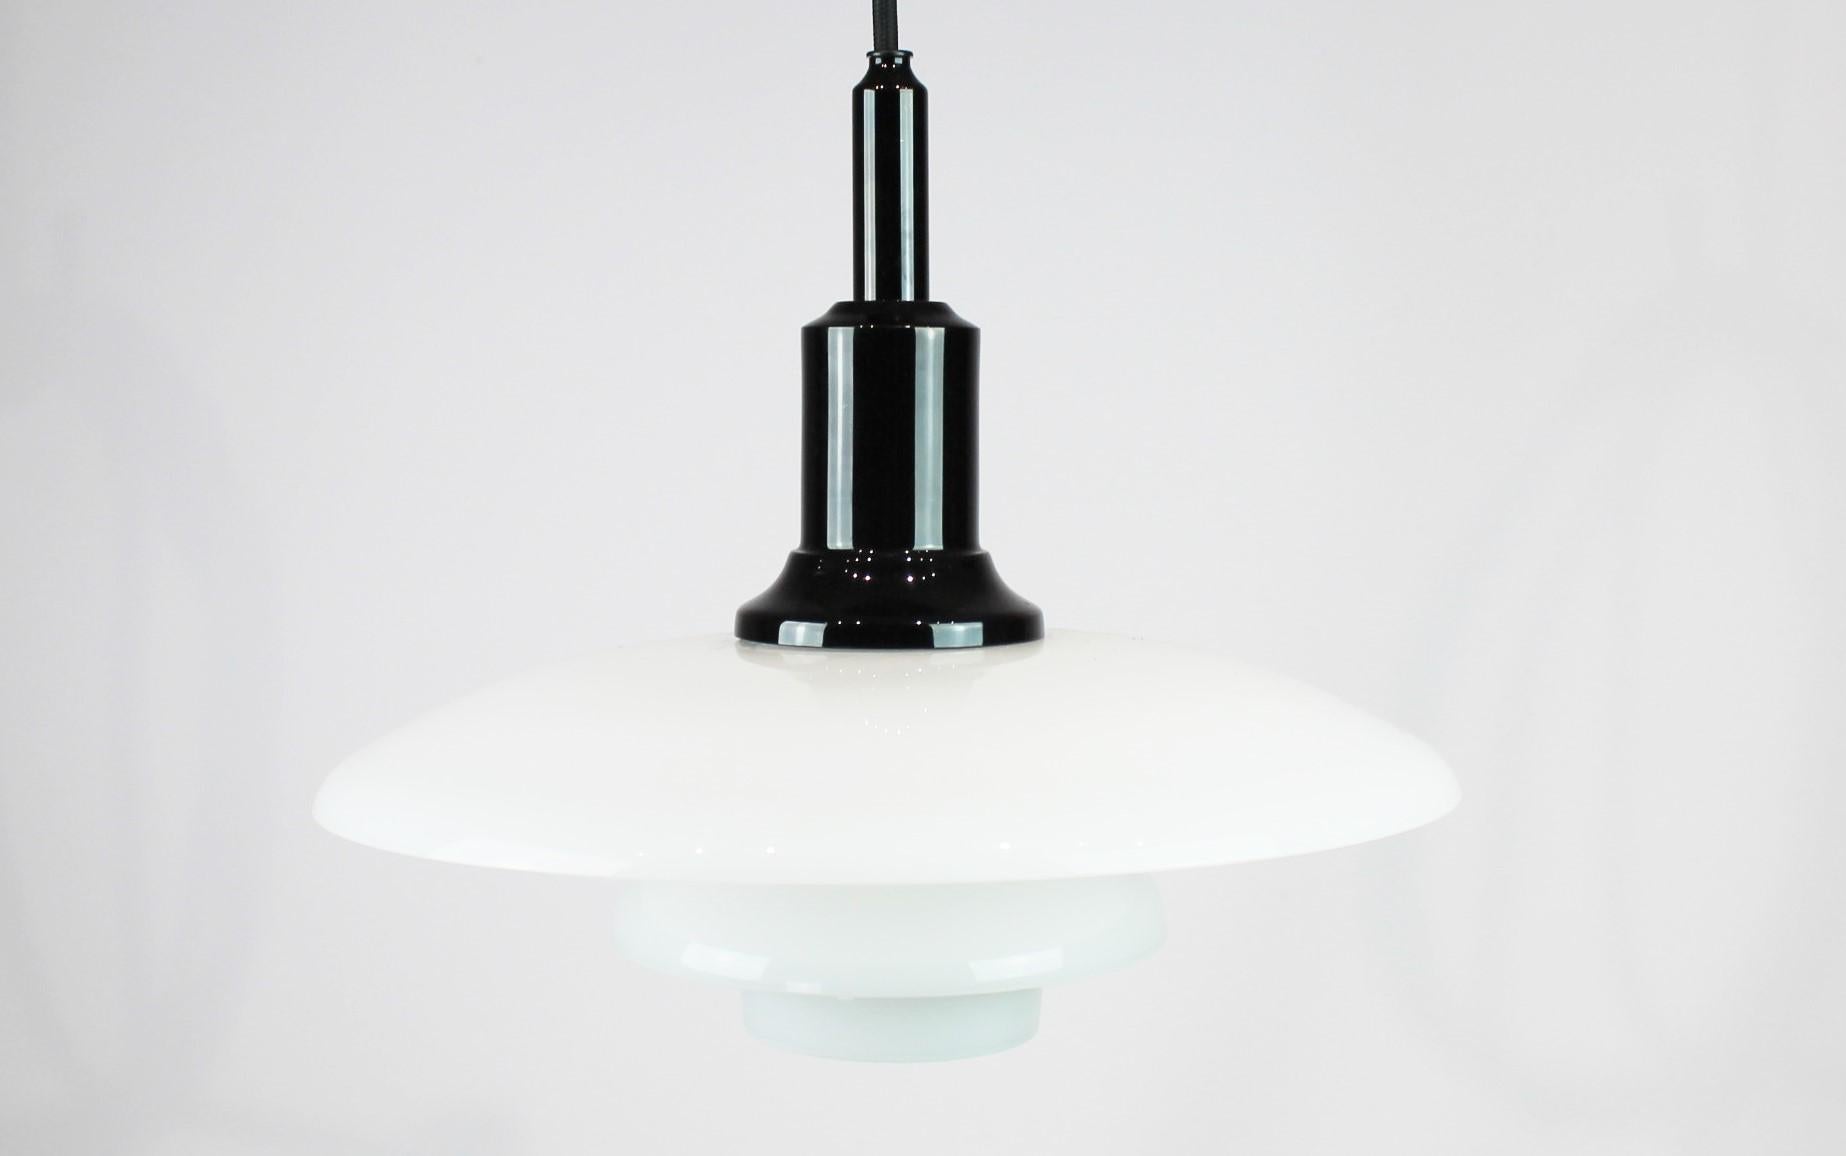 PH 3/2 Pendelleuchte, entworfen von Poul Henningsen und hergestellt von Louis Poulsen. Die Lampe ist aus weißem Opalglas und schwarz verchromt.